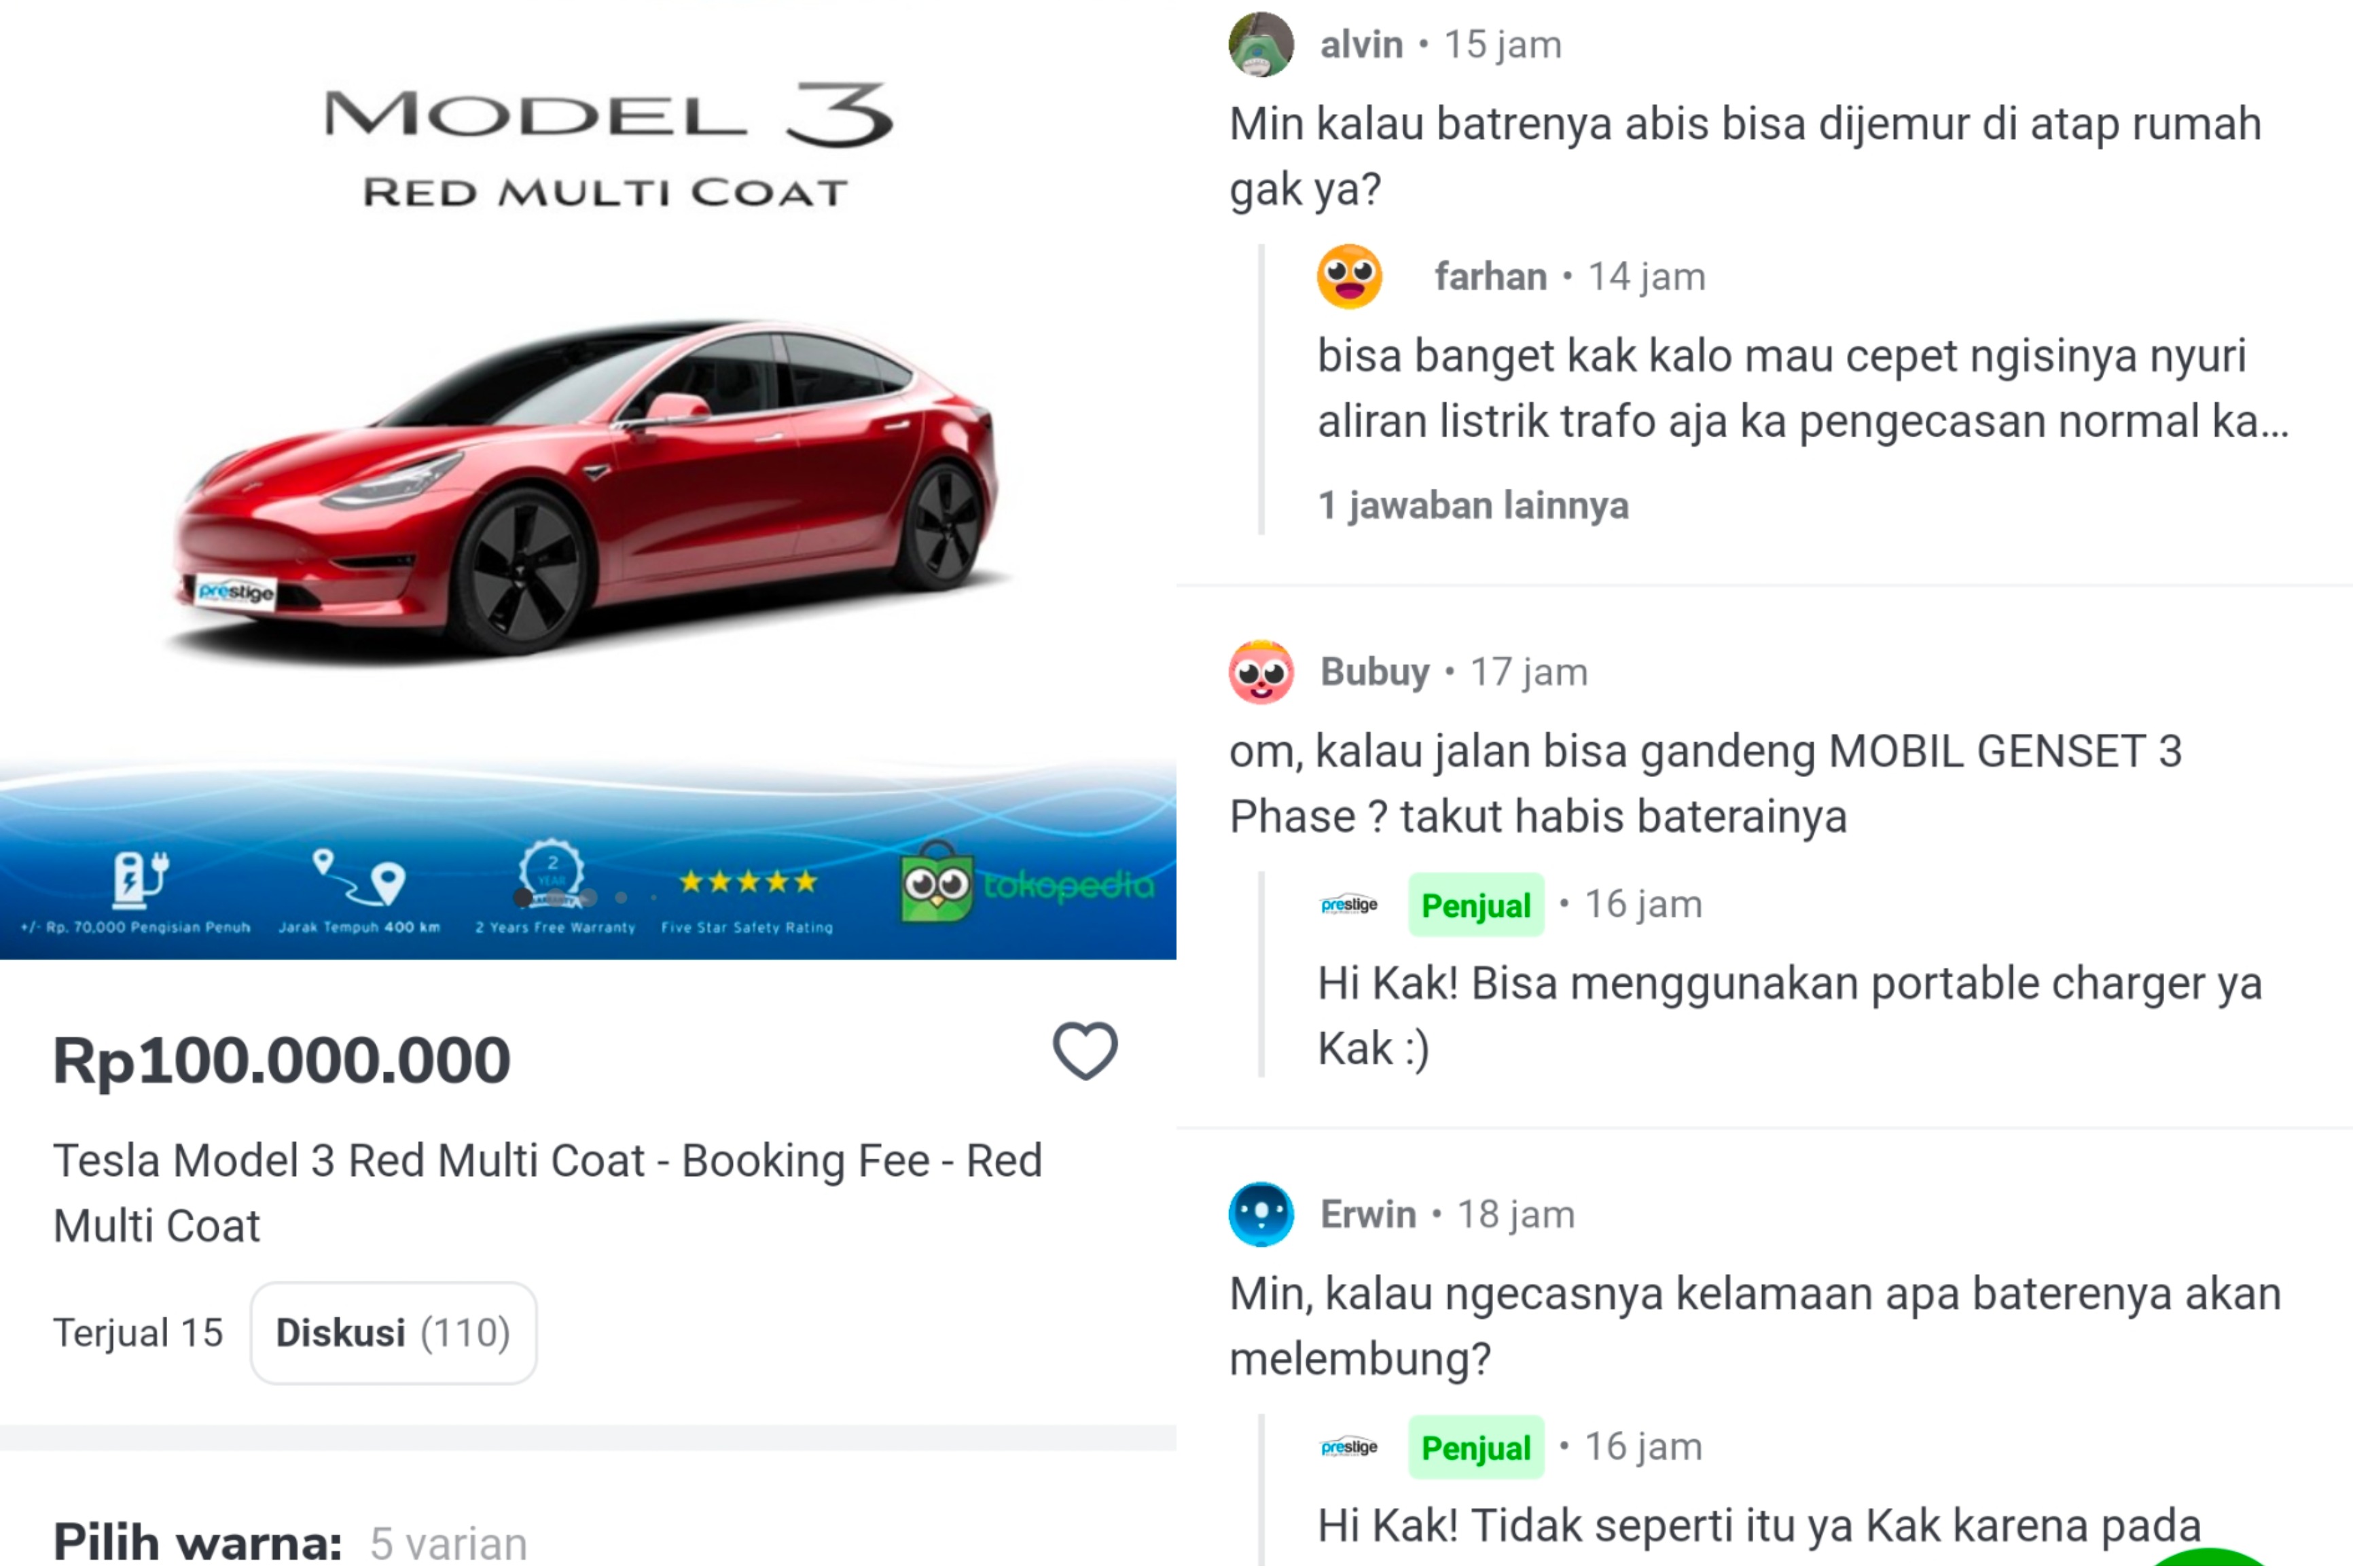 Jual Tesla, Lapak Online Dihujam Pertanyaan Konyol dari Netizen